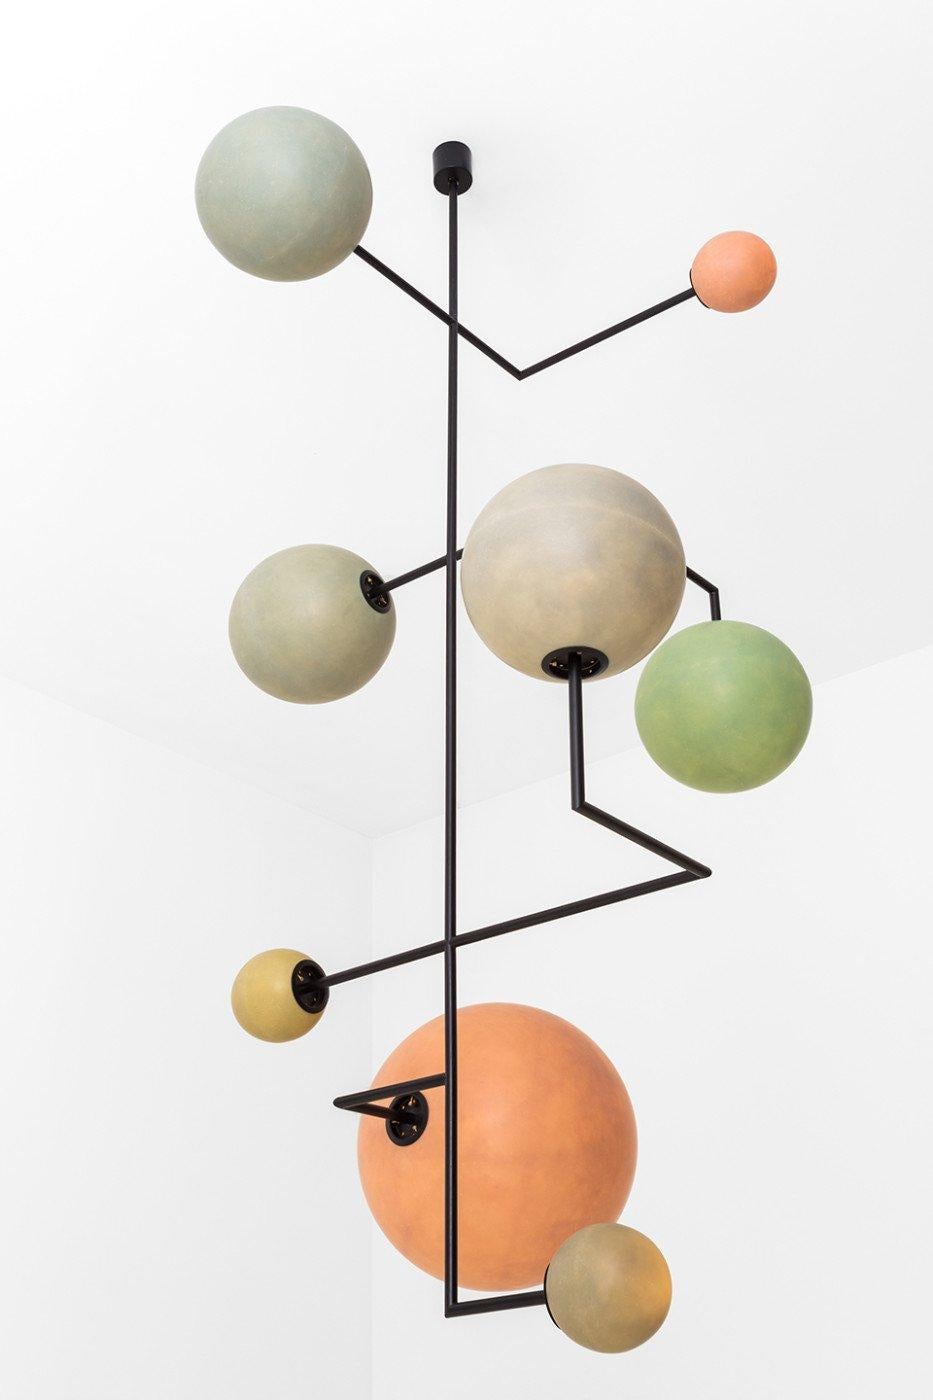 Modern Lampada 061 Ceiling Lamp in Painted Metal and Fiberglass Spheres by Dimoremilano